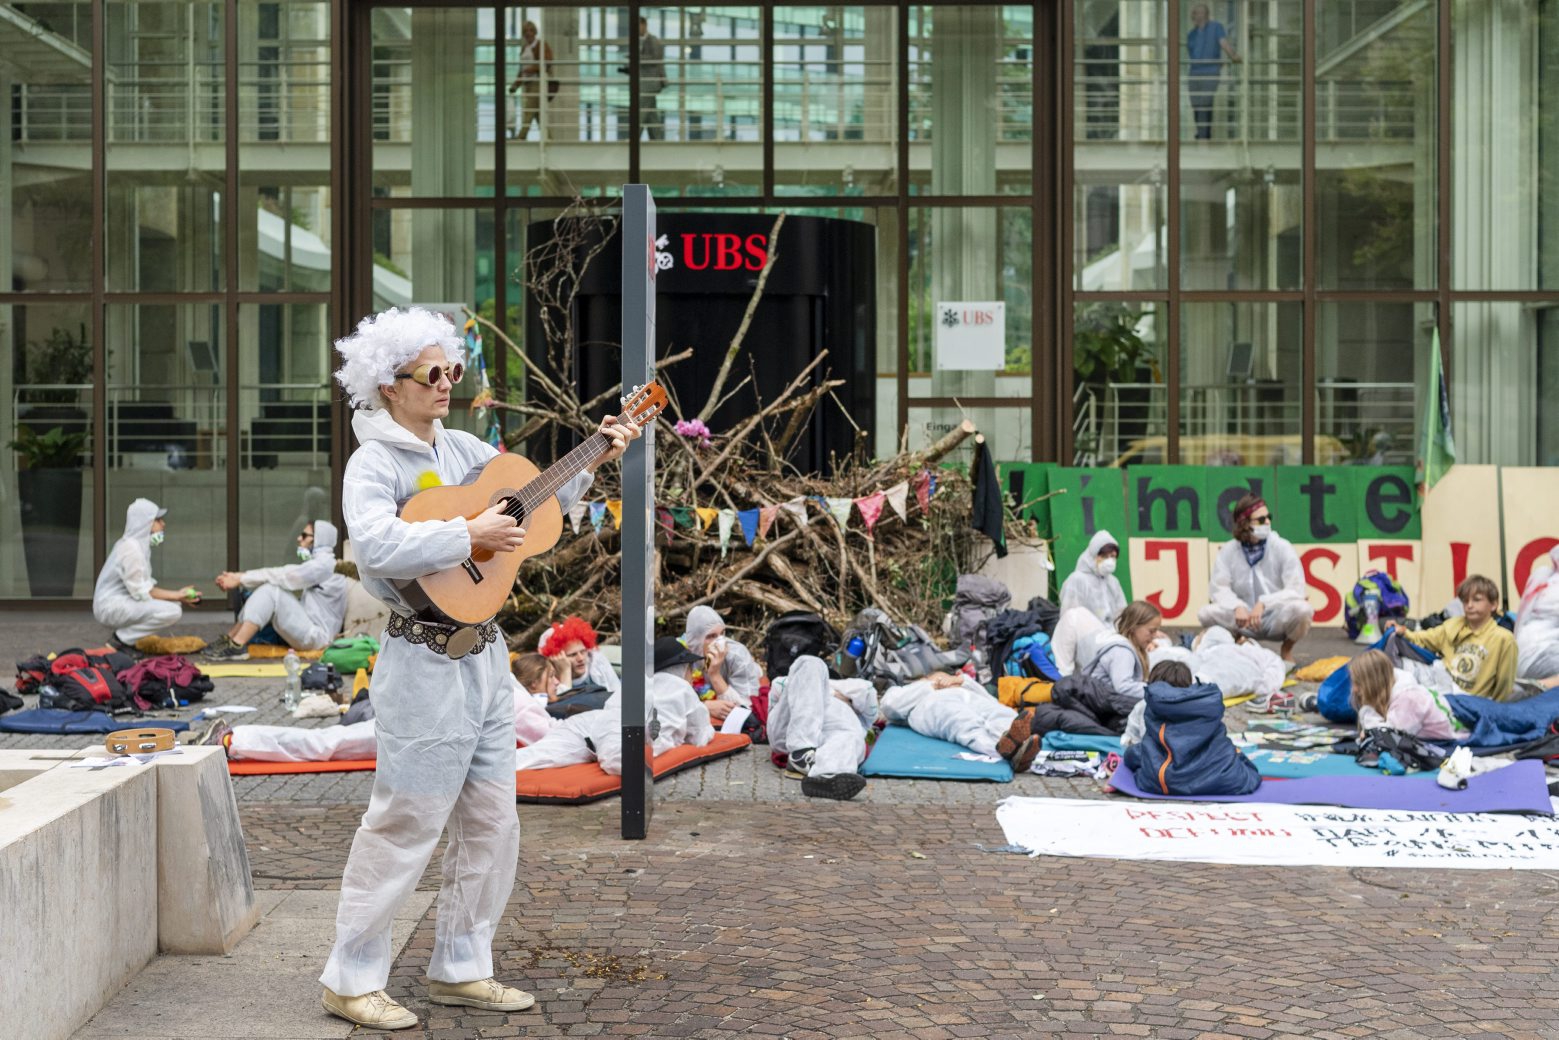 Aktivisten des Klimacamps der Gruppe Collective Climate Justice blockieren am ersten Aktionstag die Bank UBS am Aeschenplatz in Basel, am Montag, 8. Juli 2019. (KEYSTONE/Georgios Kefalas) SCHWEIZ COLLECTIVE CLIMATE JUSTICE